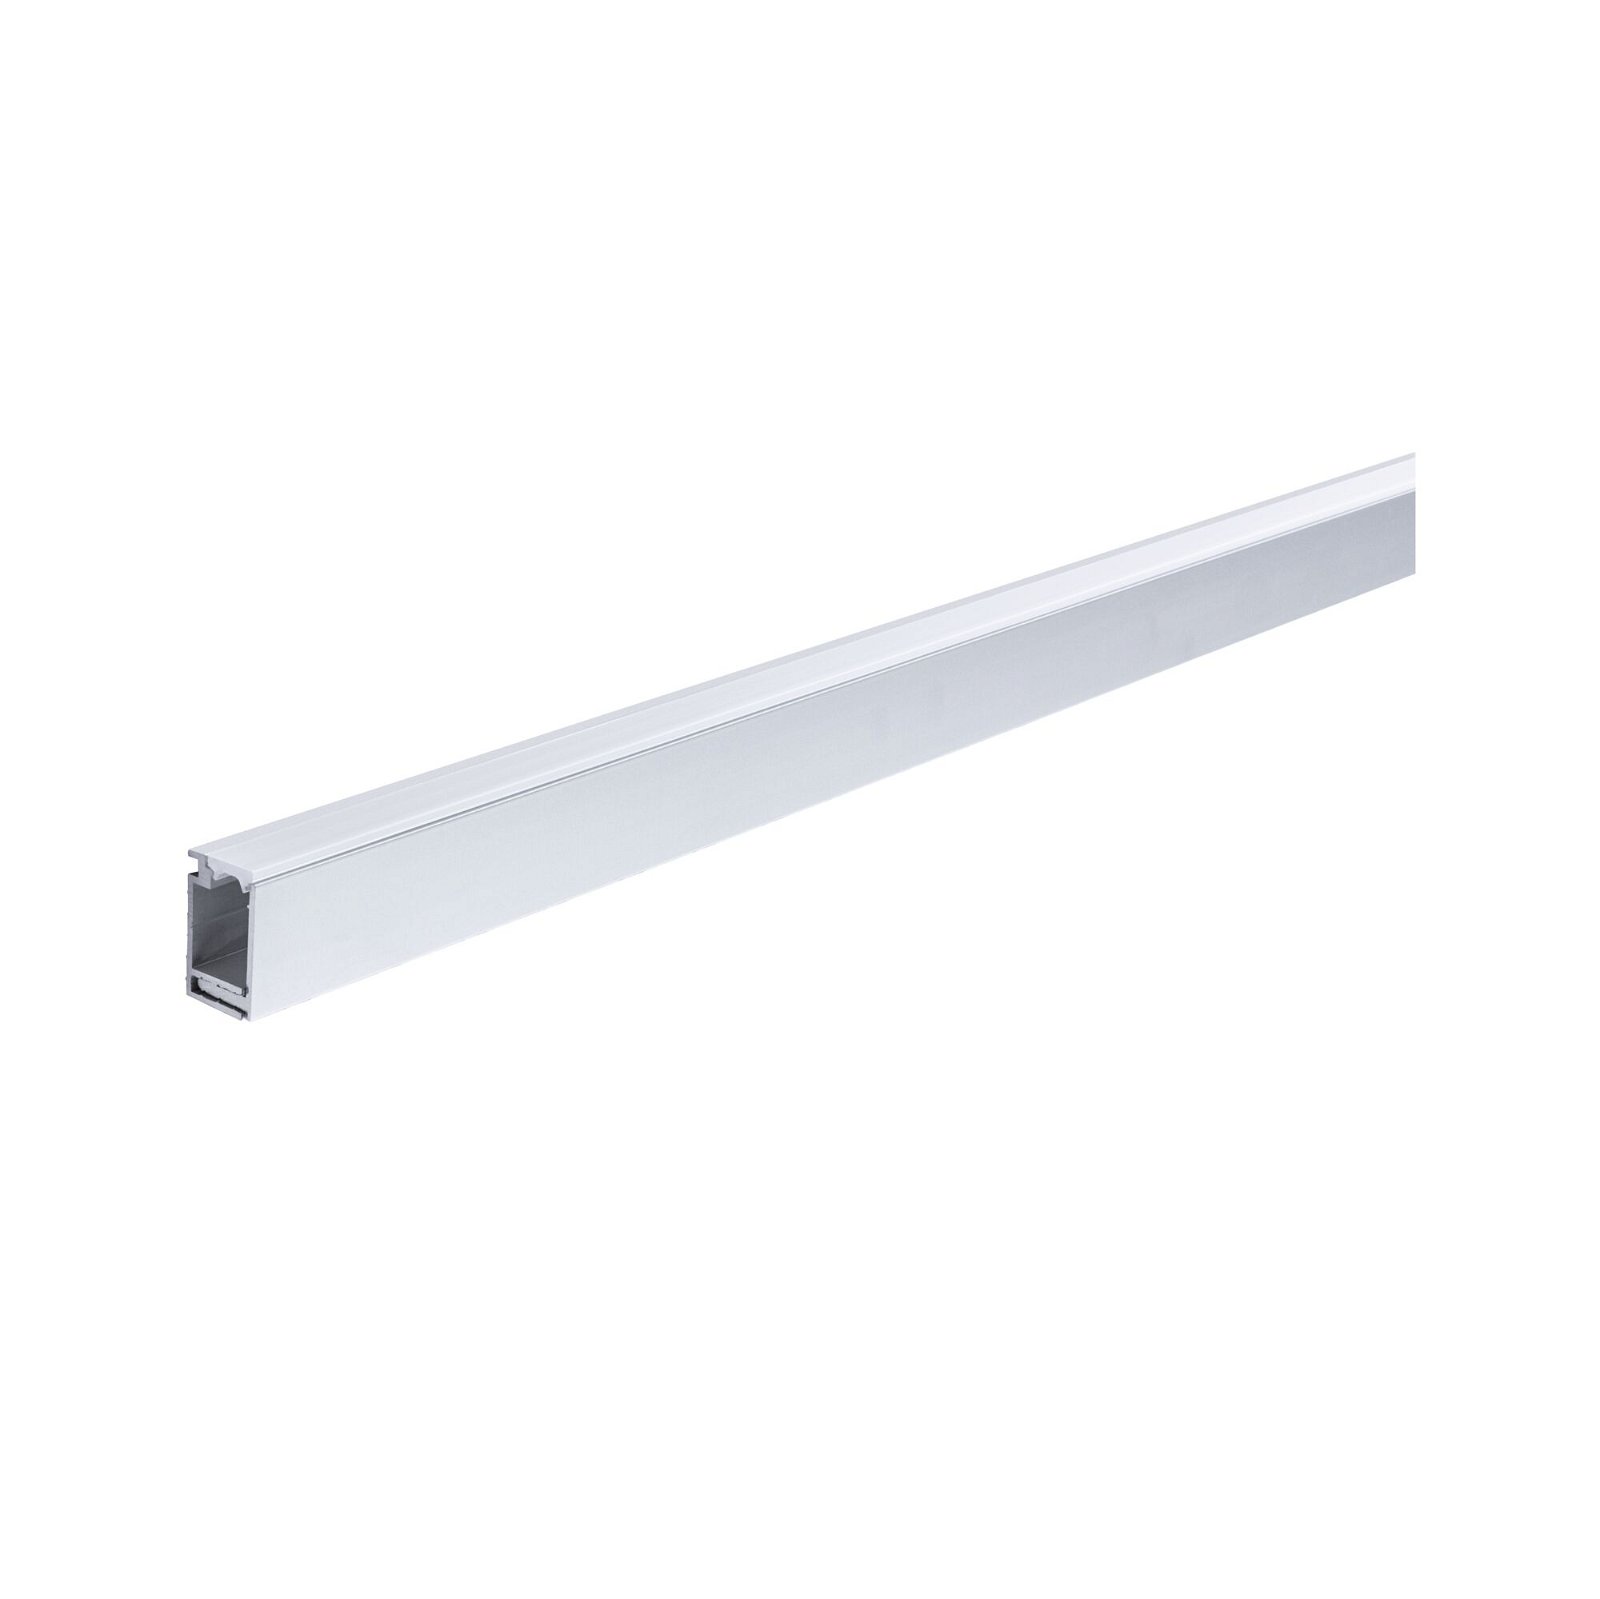 LumiTiles LED Strip support profile Top 1m Anodised aluminium/Satin